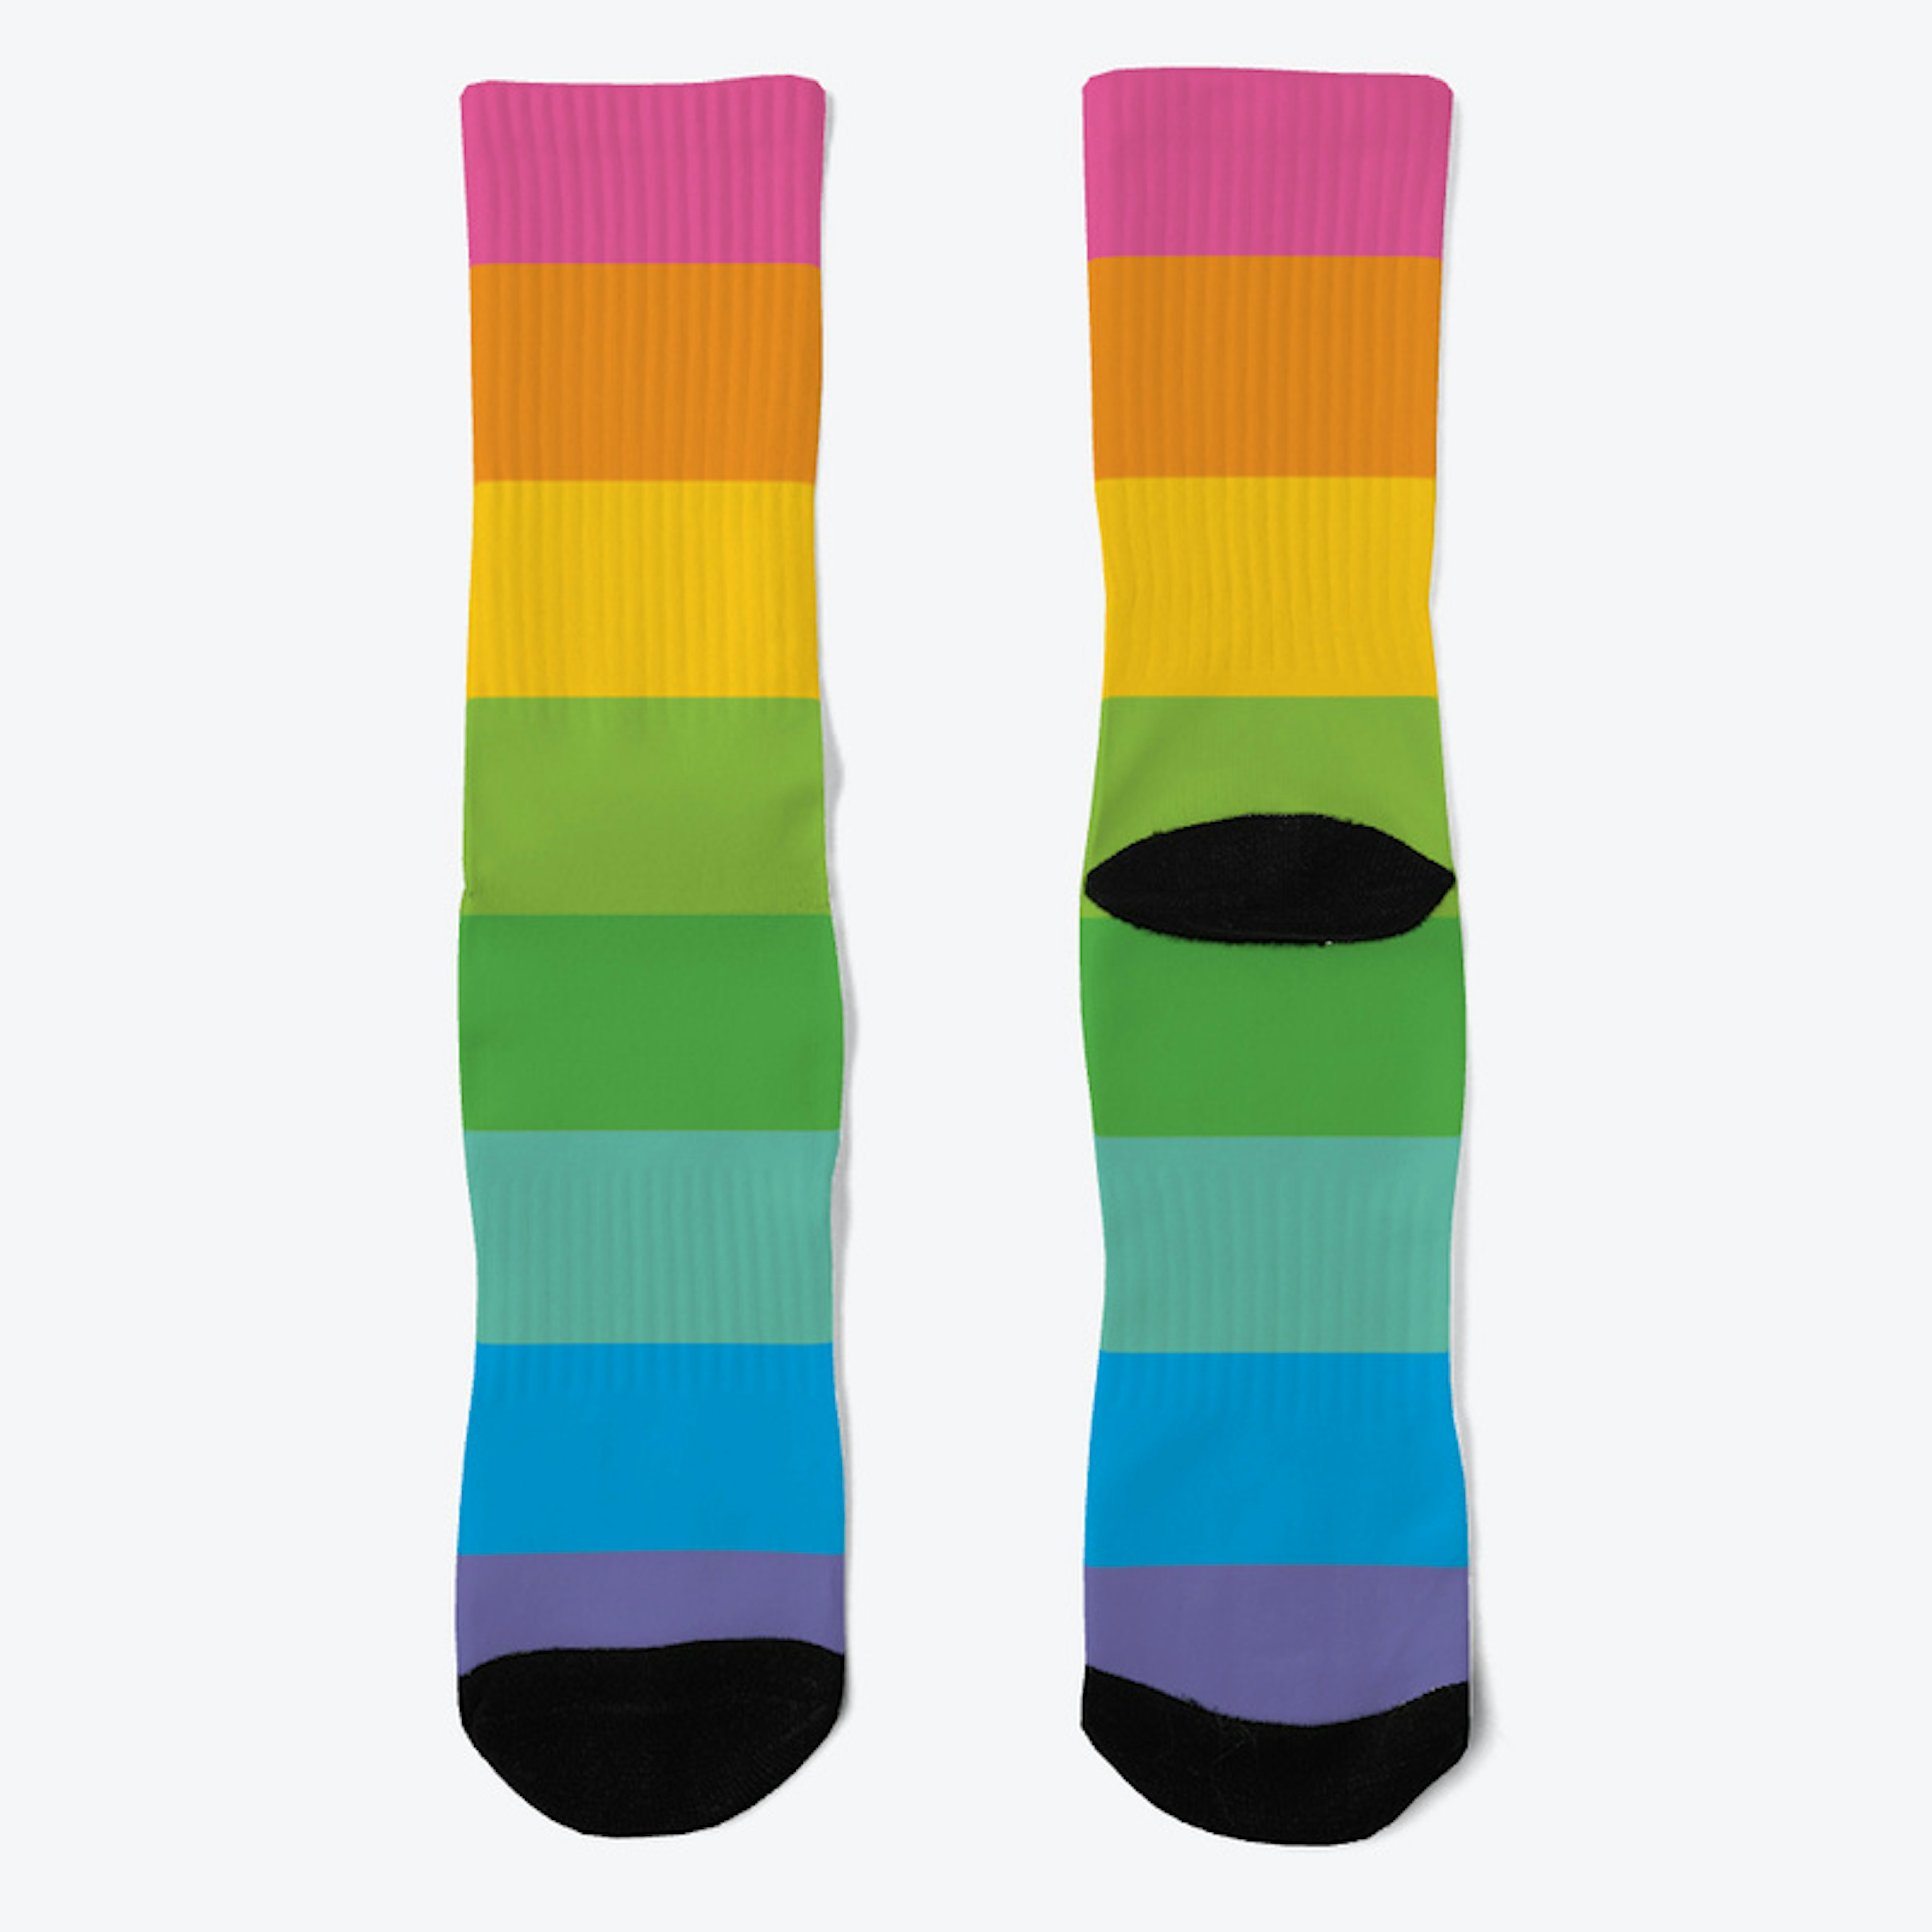 The Society Striped Crew Socks Design